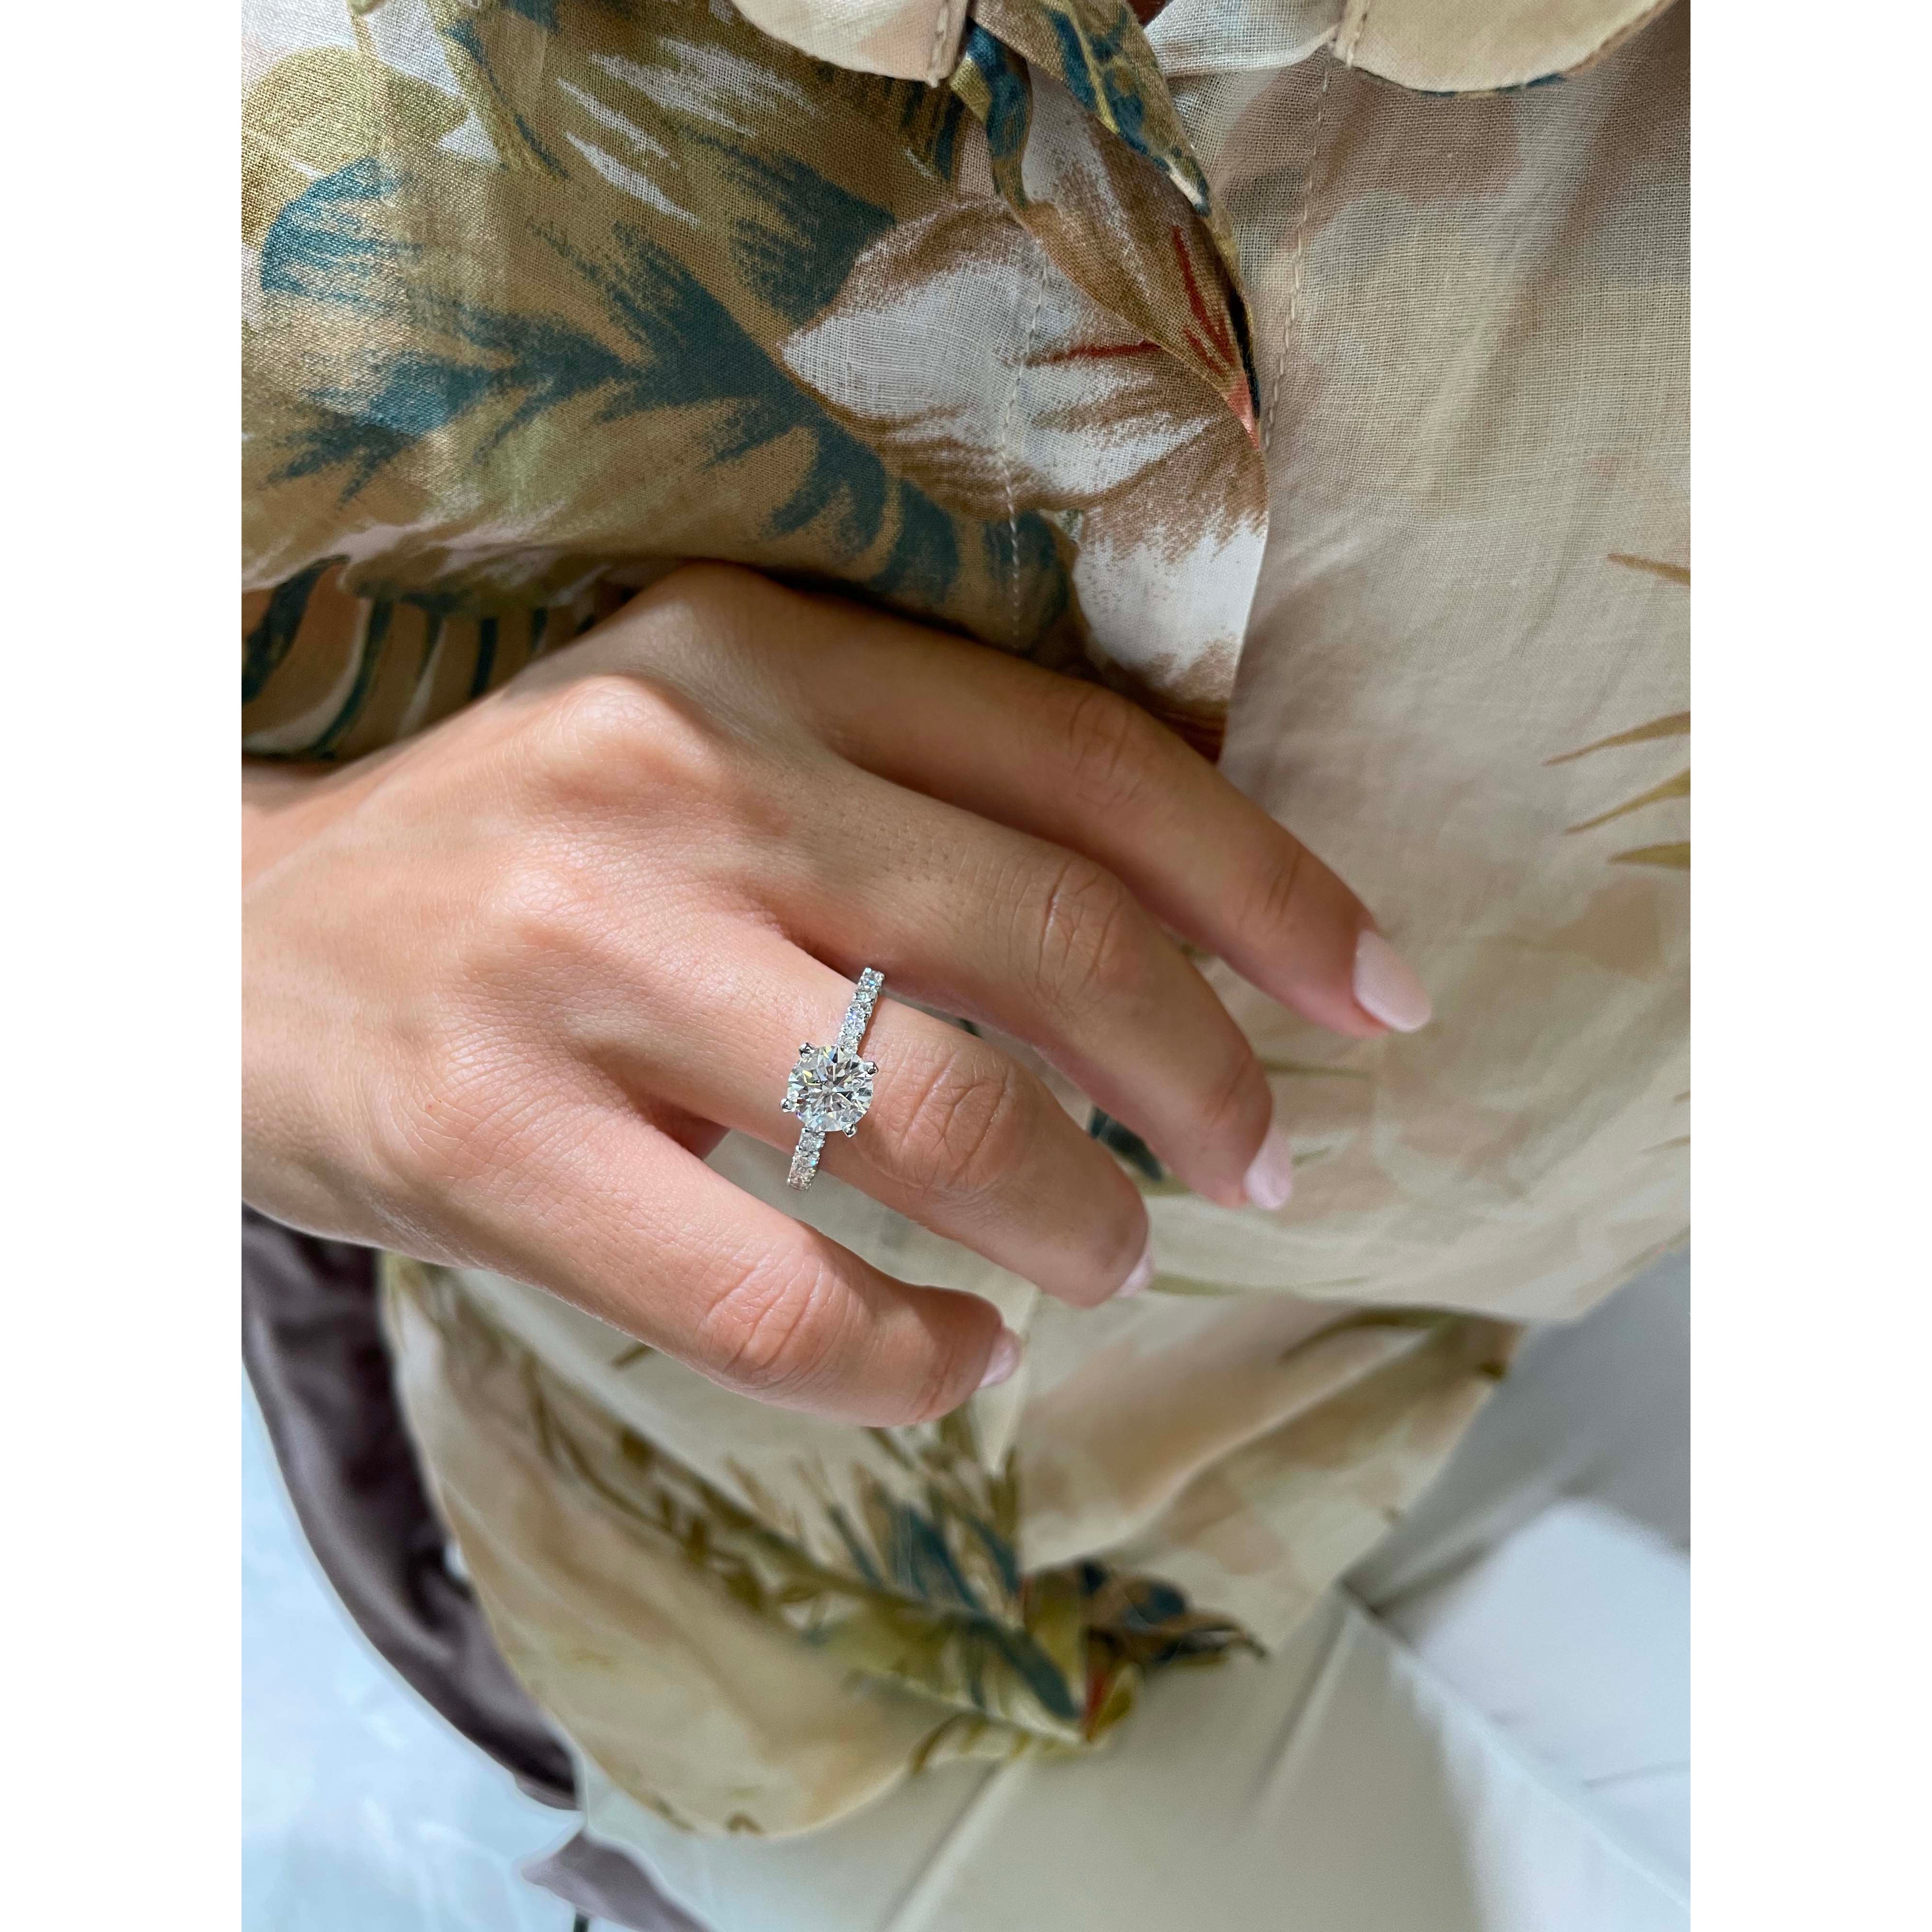 Alison Diamond Engagement Ring -Platinum